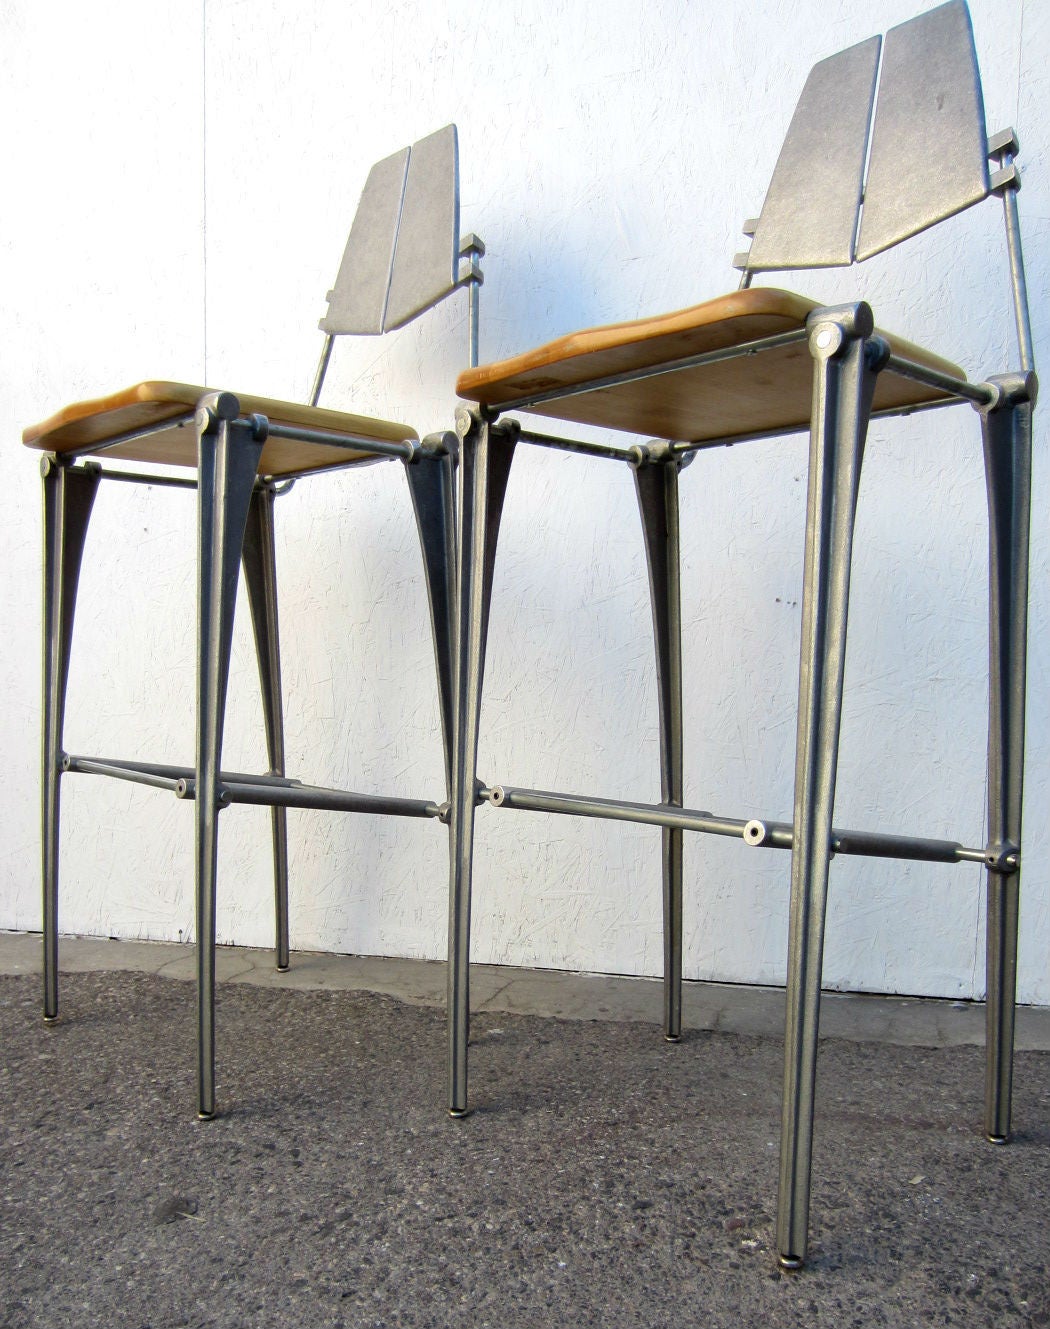 Außergewöhnliche Barhocker aus Aluminium, entworfen von Robert Josten.
Aluminiumguss mit Buchenholzsitzen.
Industrie und Moderne, um 1980.